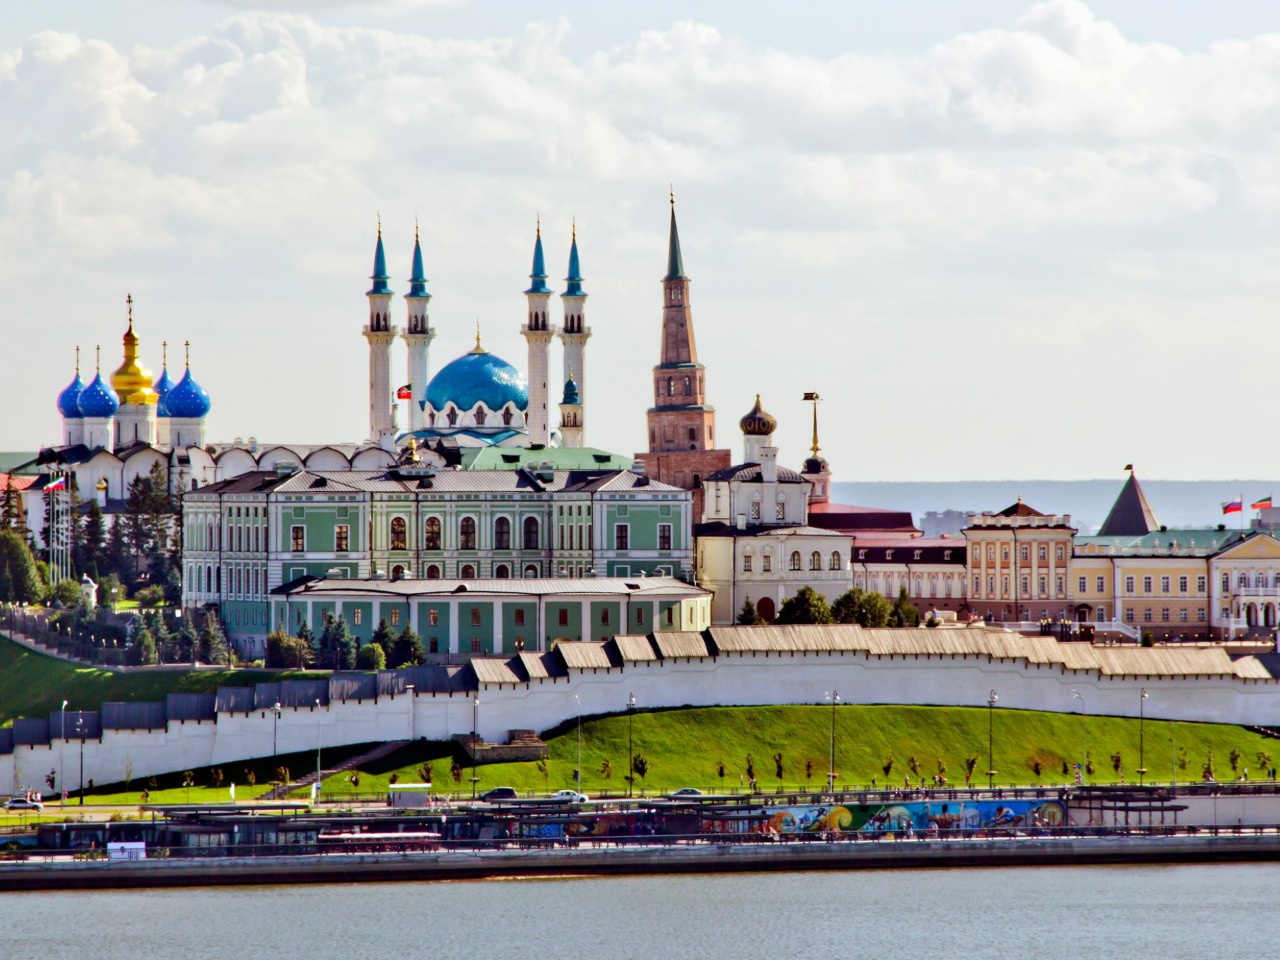 Обзорная по Казани с посещением Кремля | Цена 7450₽, отзывы, описание экскурсии